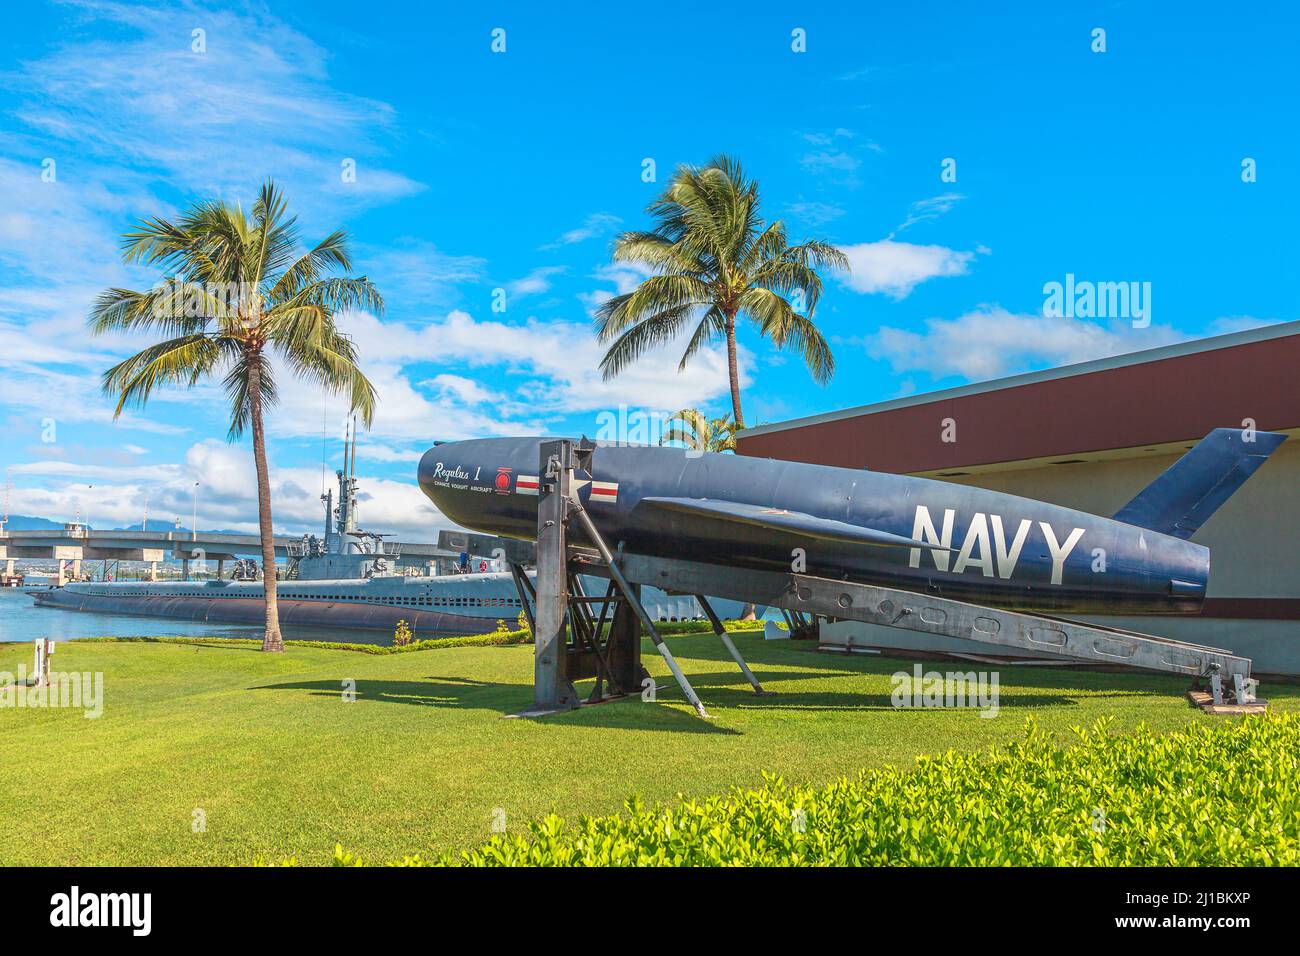 Pearl Harbor, Honolulu, Oahu, Hawaii, États-Unis - août 2016 : missile de croisière nucléaire Regulus 1 du SSM N-8 de la guerre froide de 1950s-1960s. Situé dans Banque D'Images